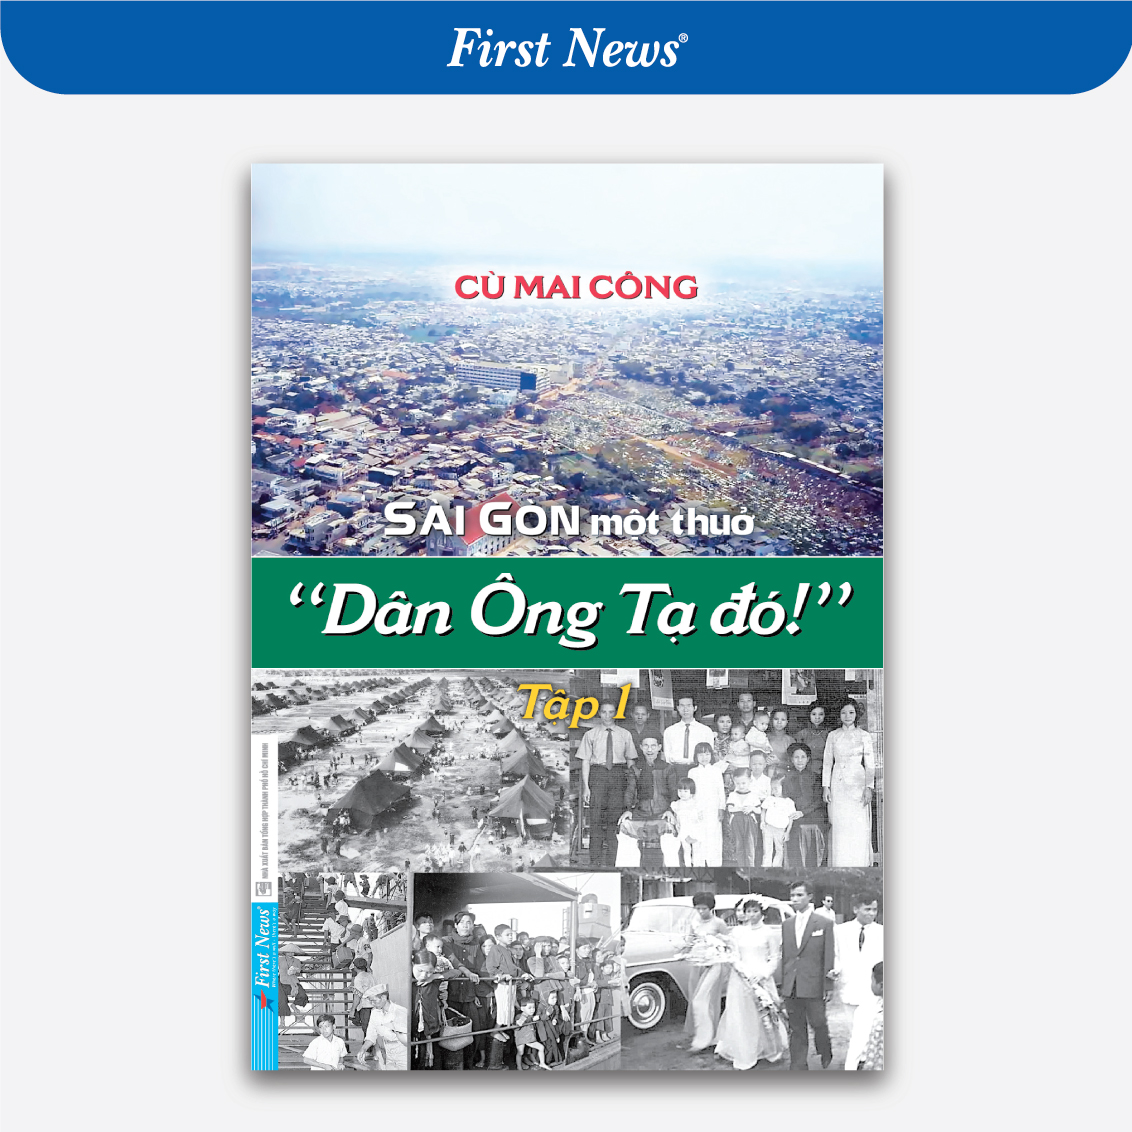 Sài Gòn một thuở "Dân Ông Tạ đó!" - Tập 1